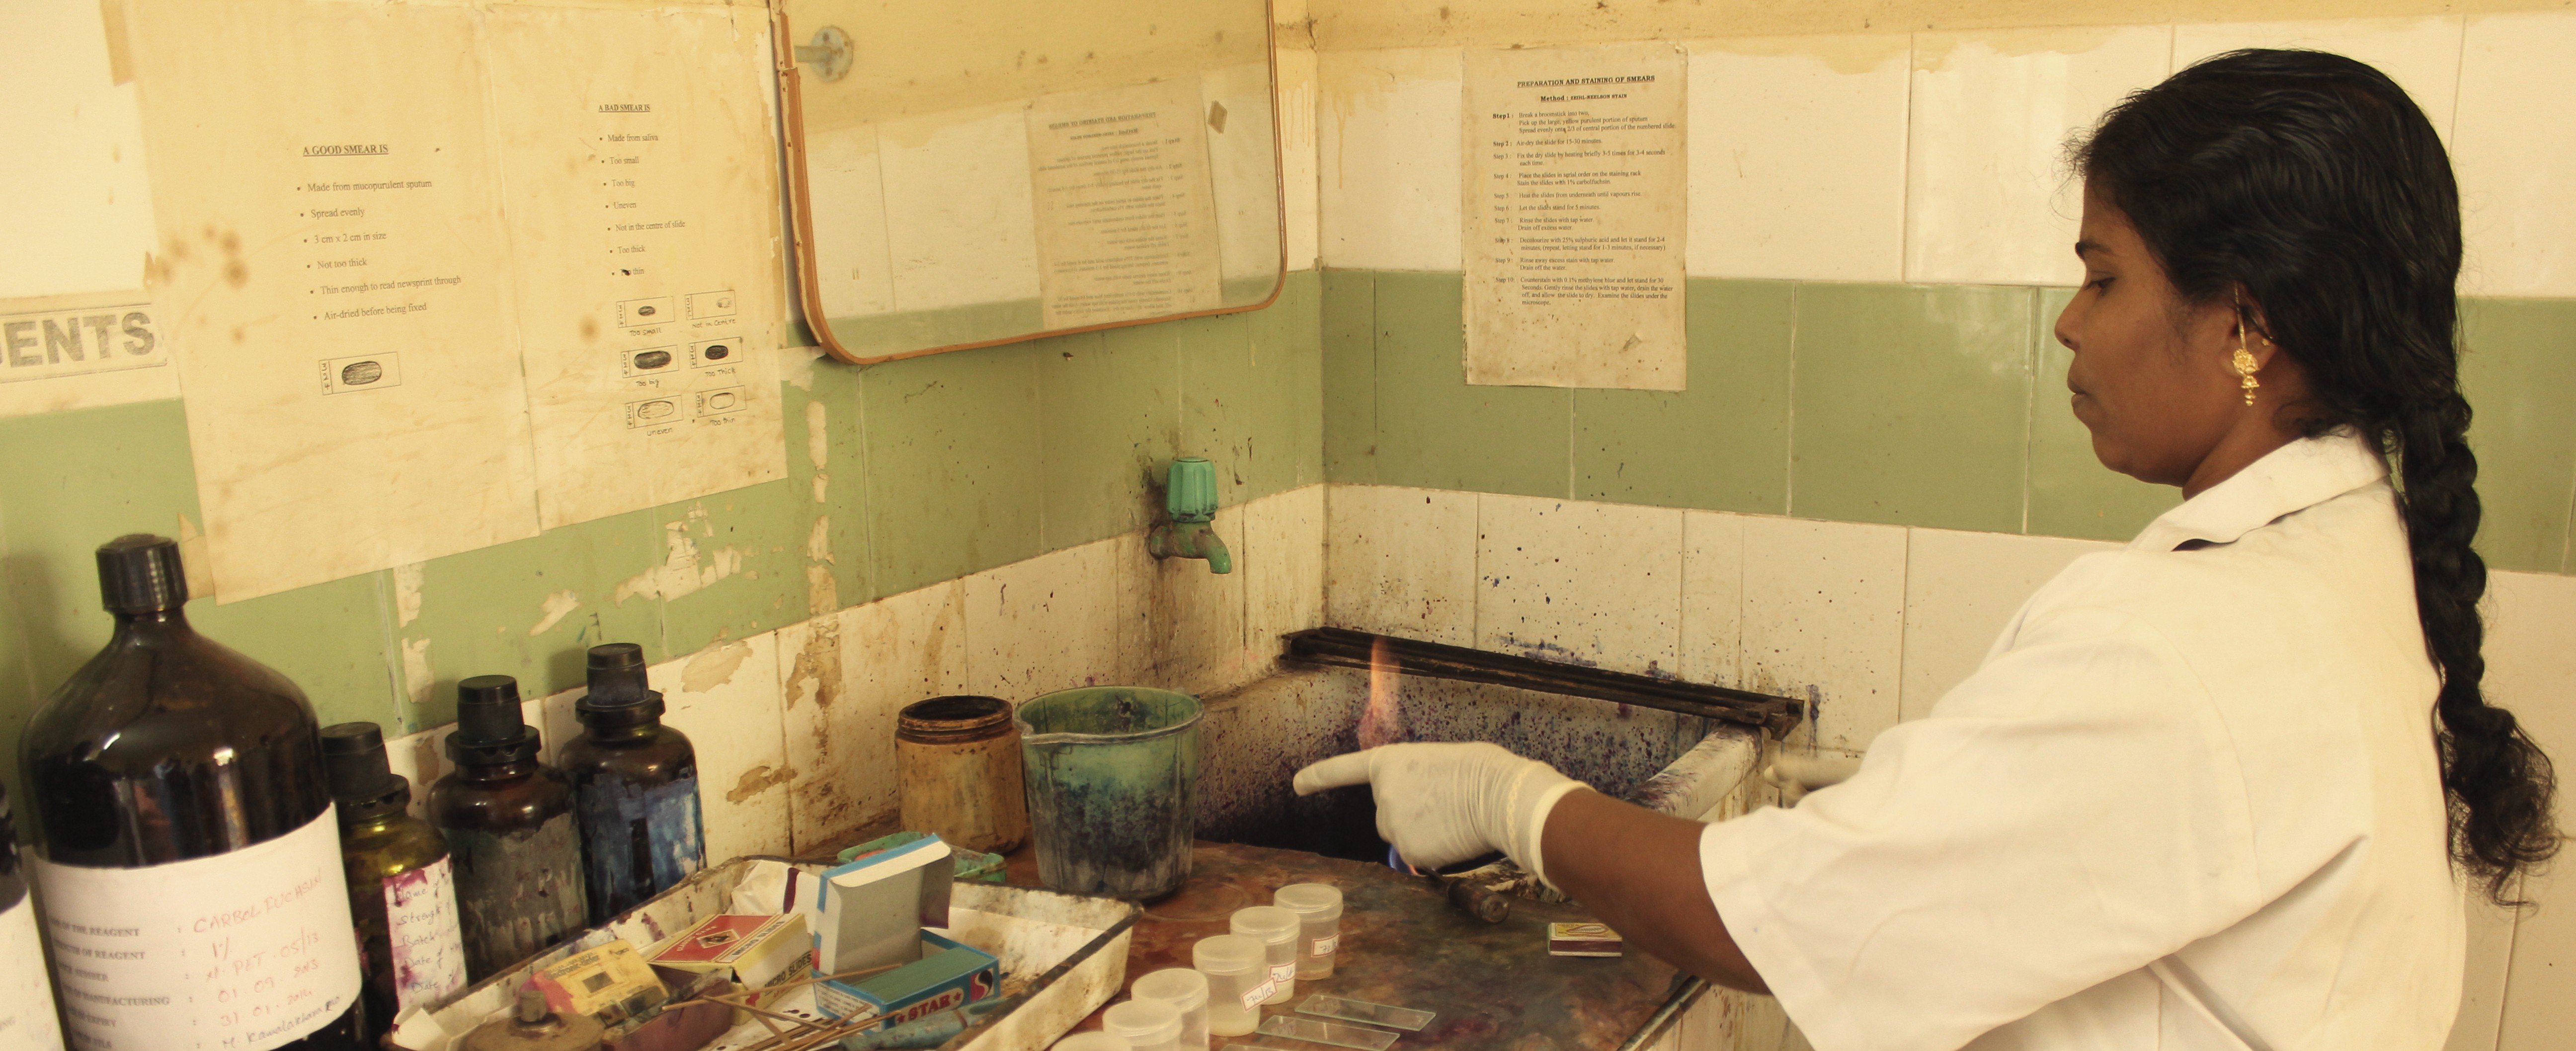 TB diagnostic technician in India